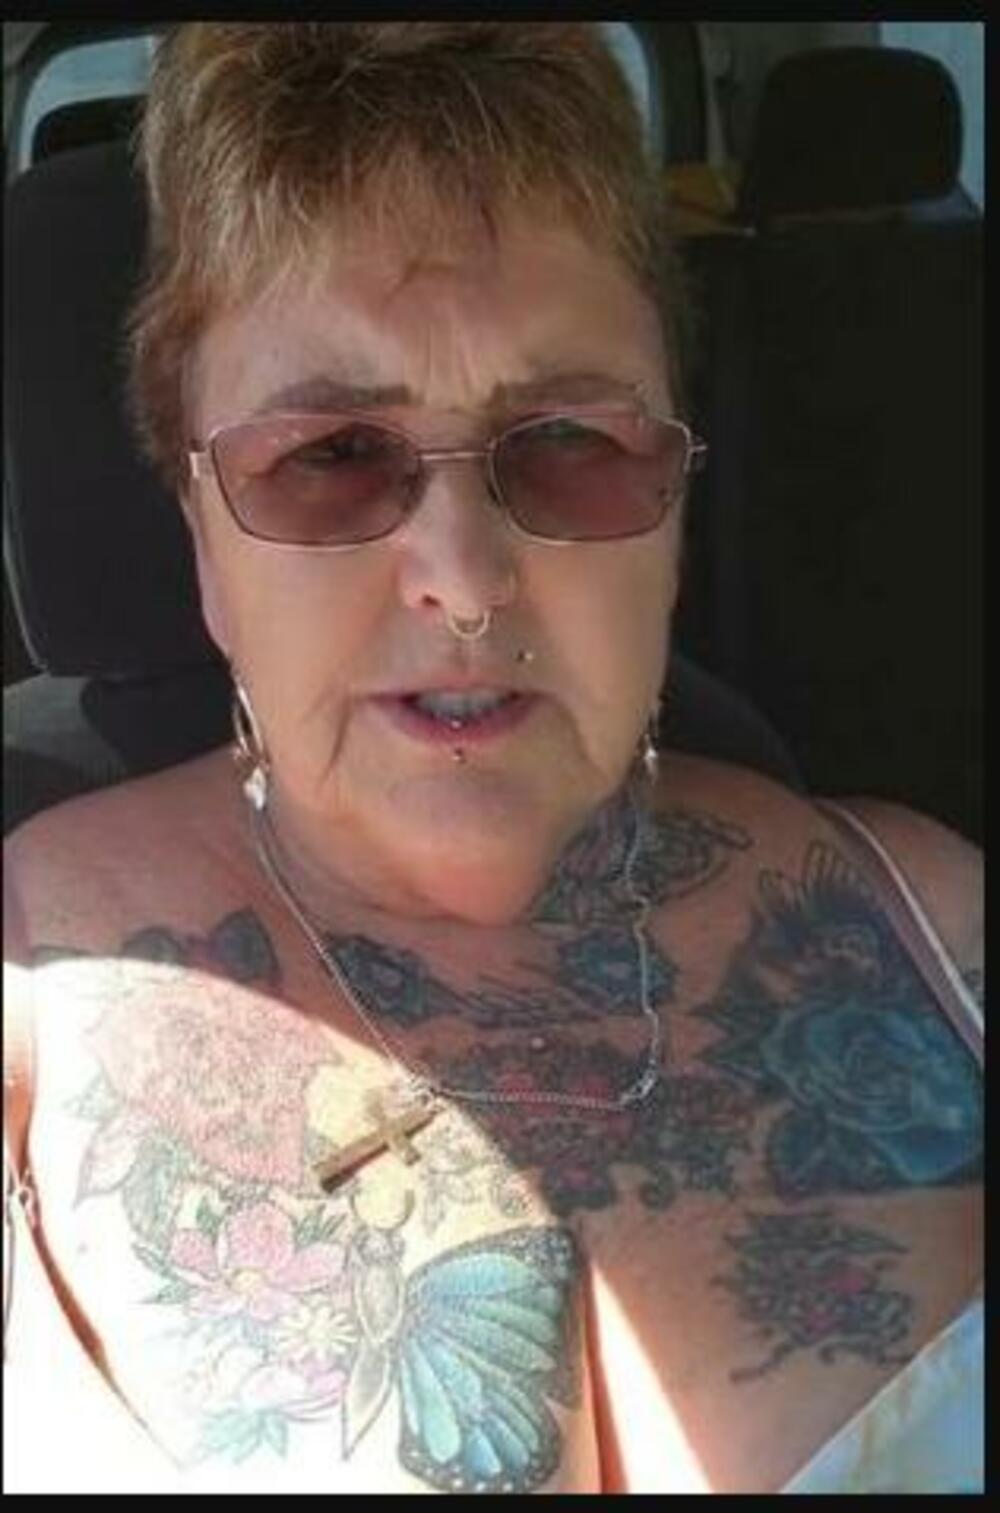 baka iz Australije, tetovaže